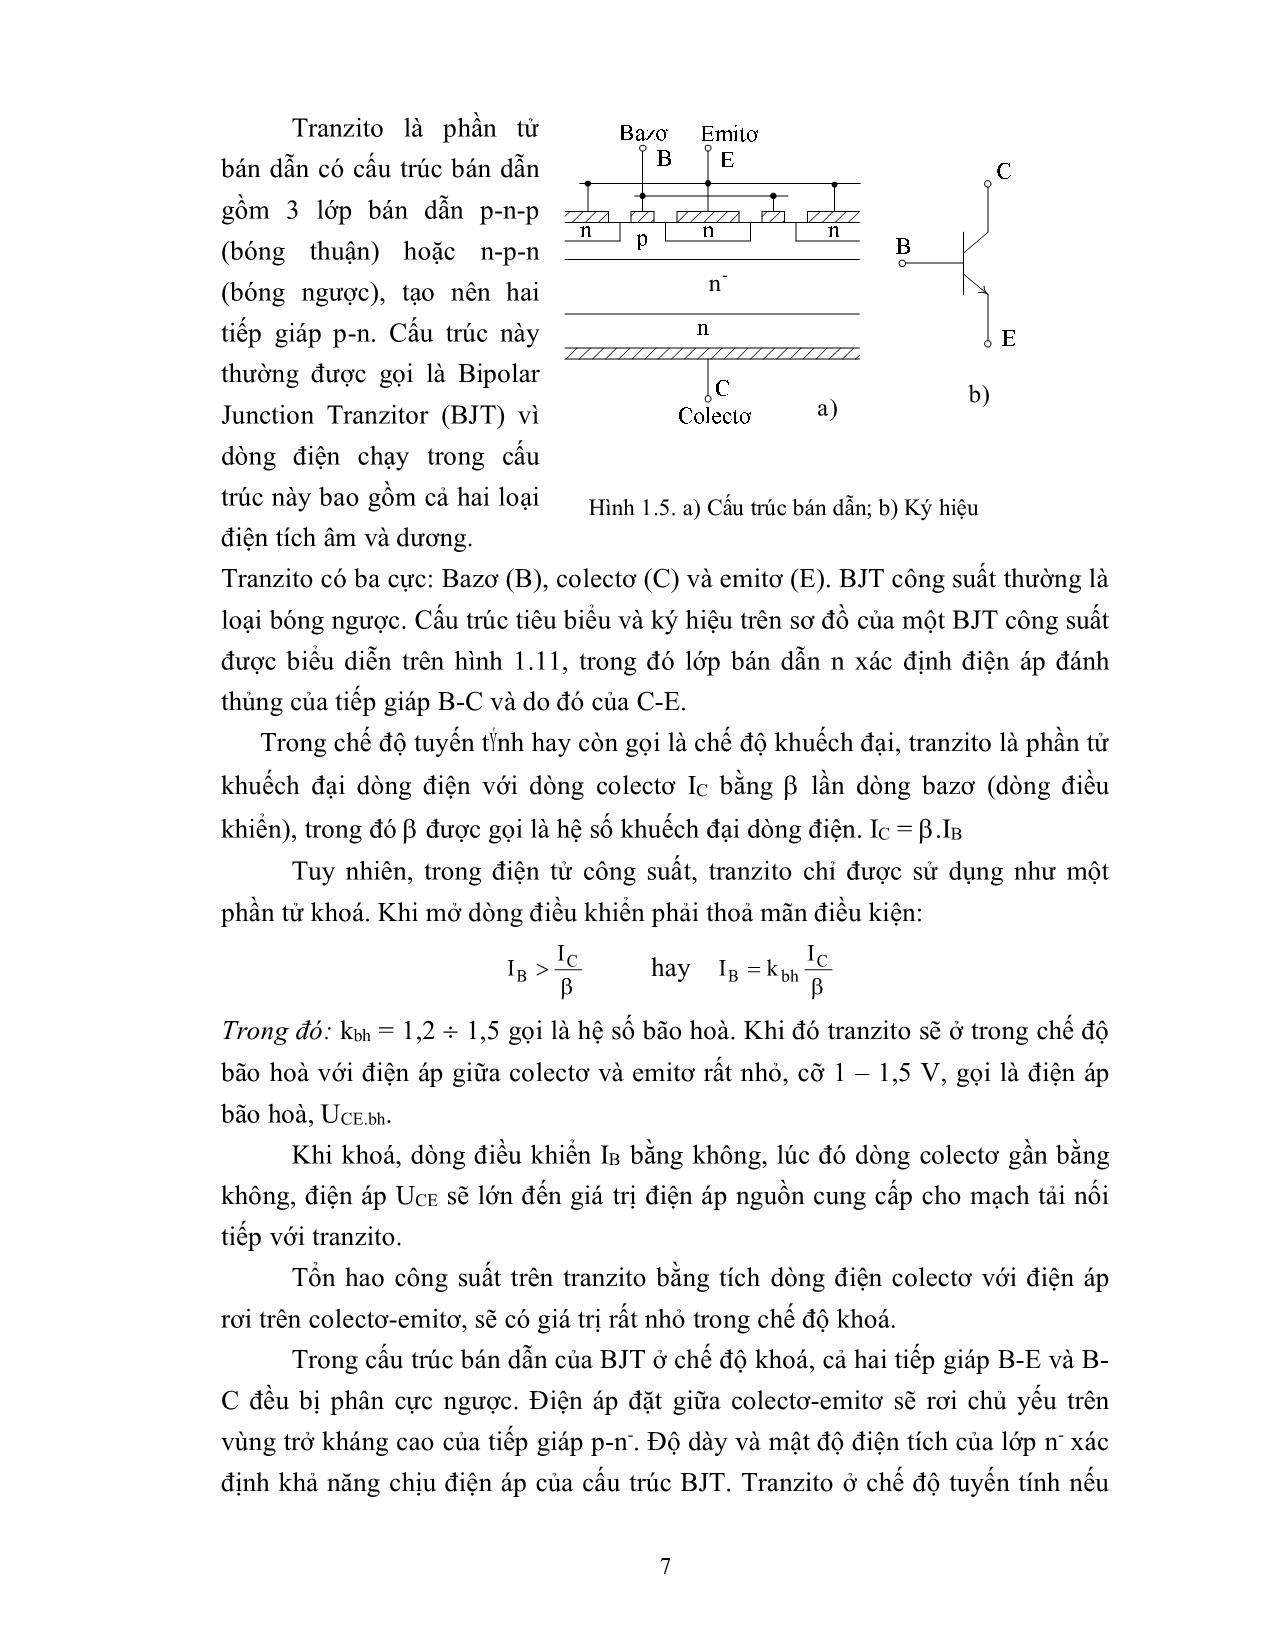 Bài giảng mô đun Lắp mạch điện tử công suất trang 7